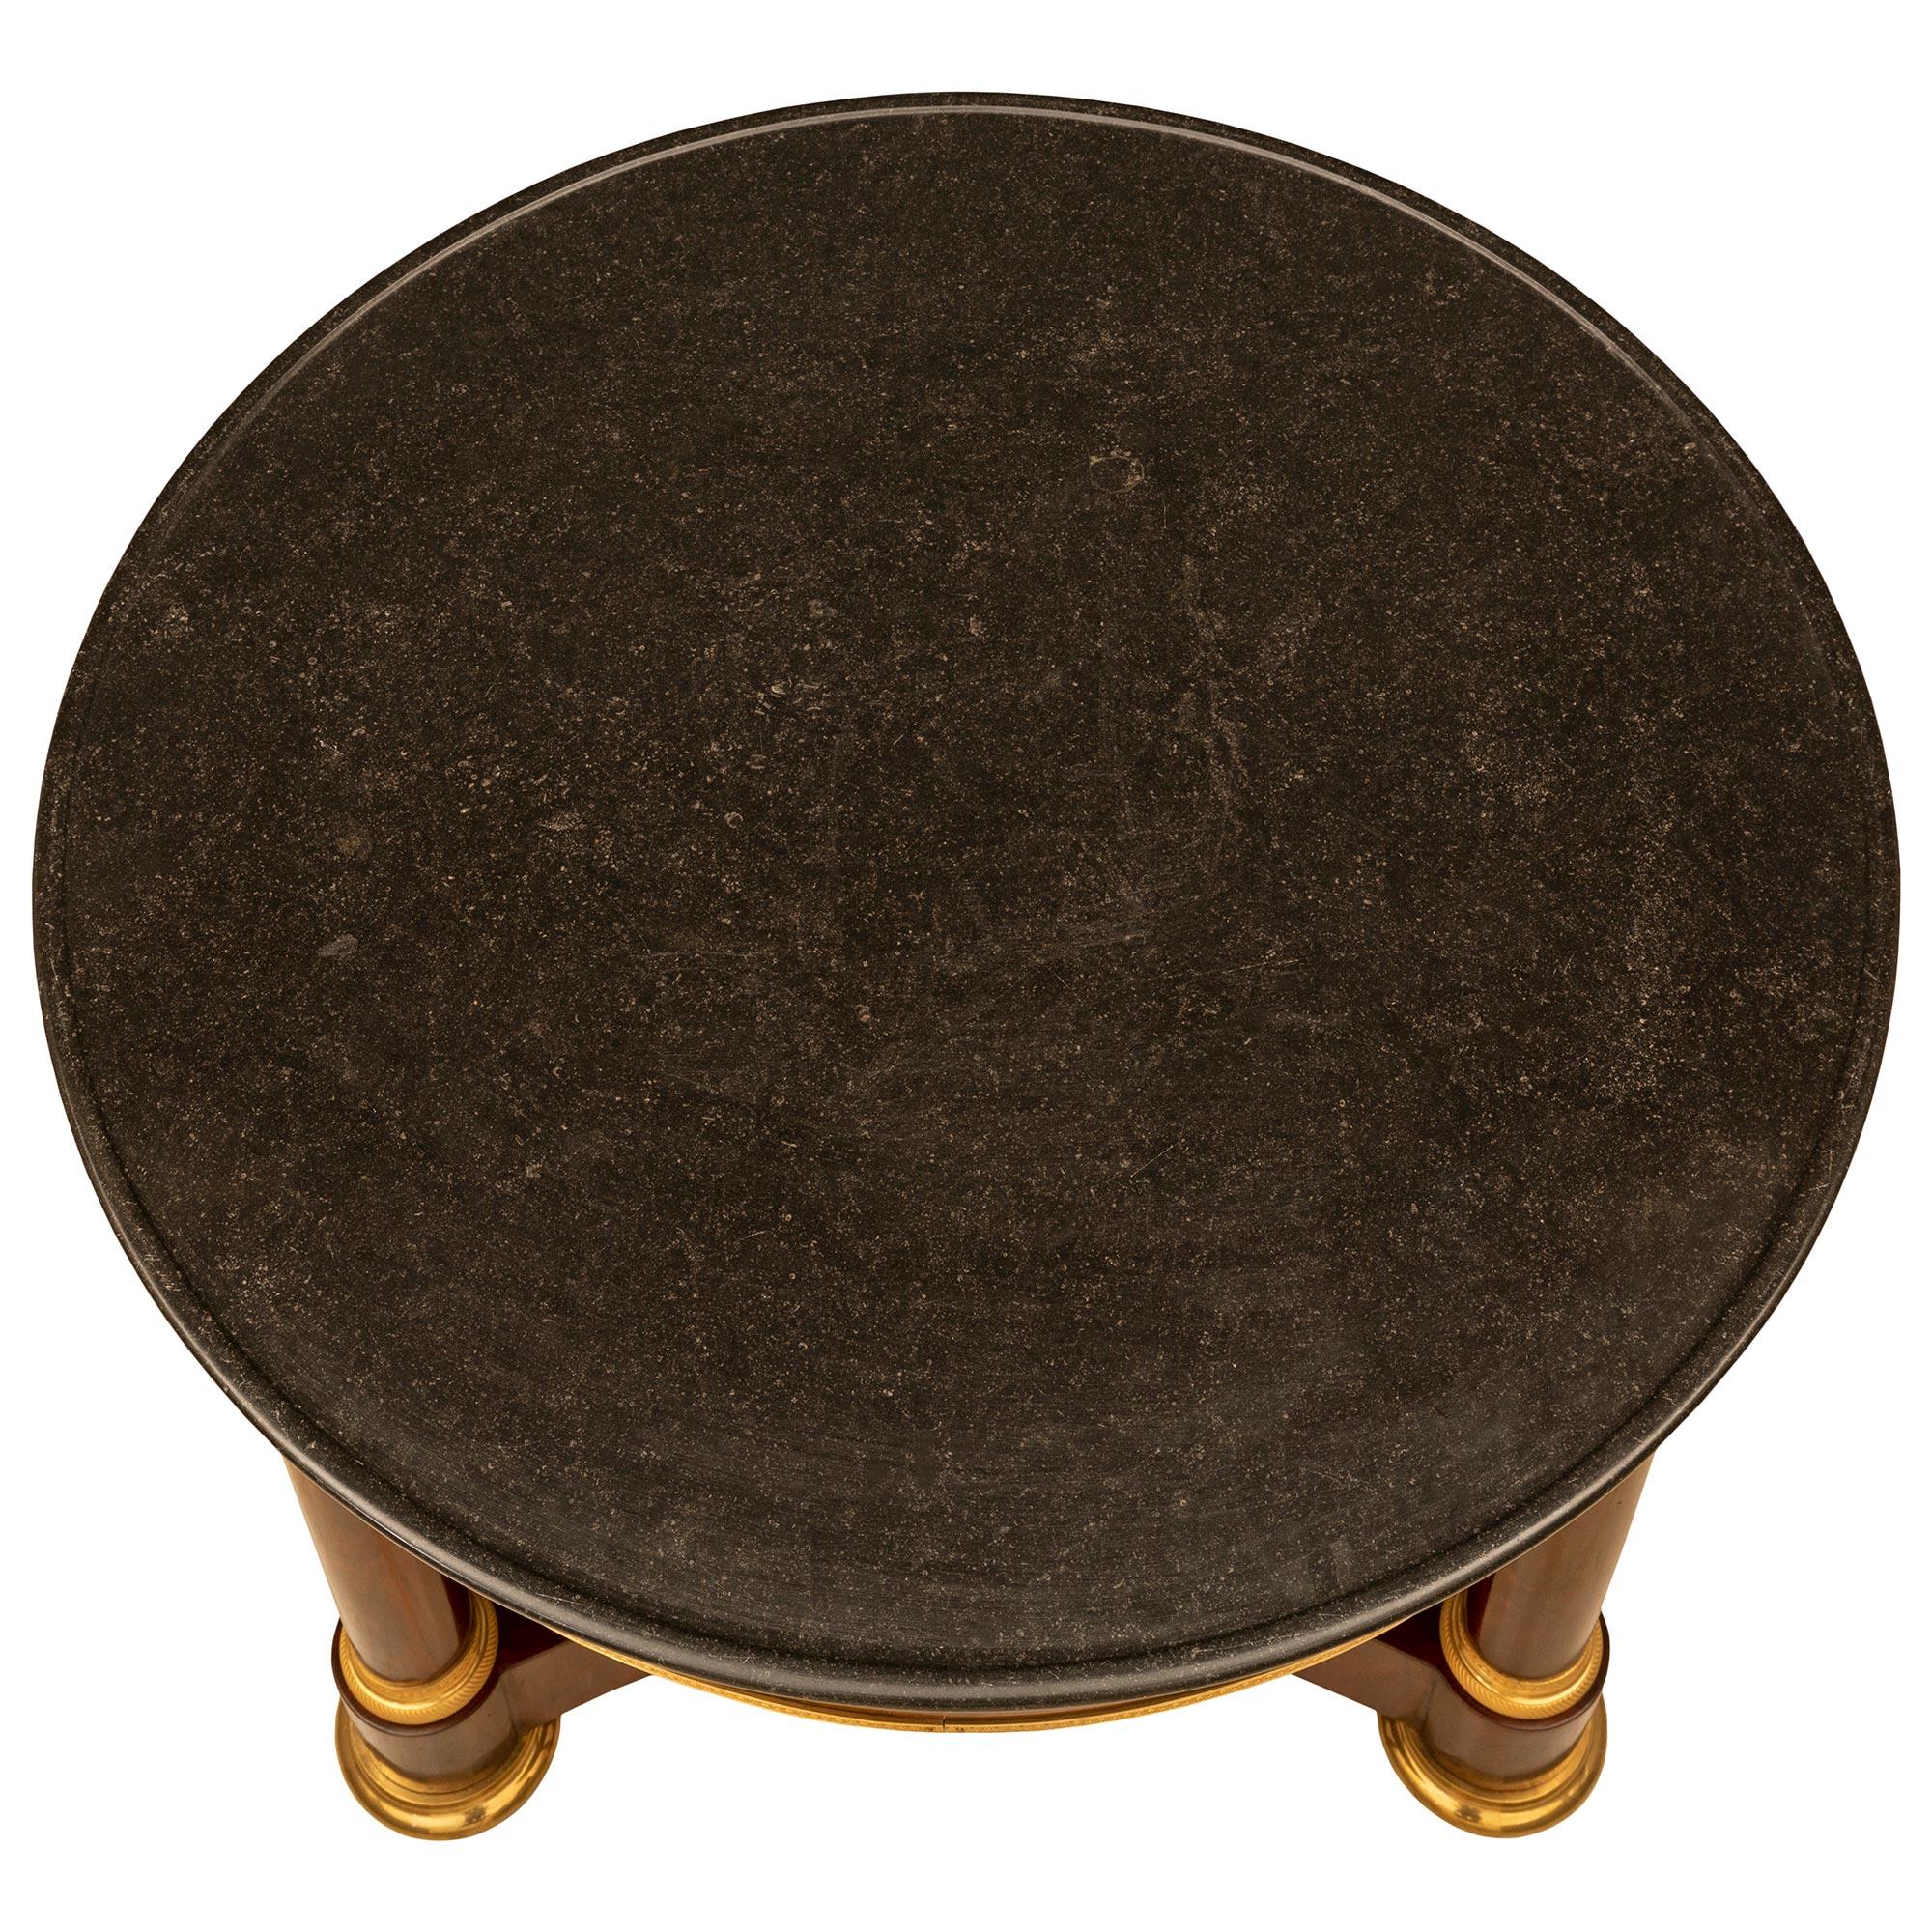 Une très belle table centrale en acajou de style 1er Empire du 19ème siècle. La table repose sur des pieds circulaires en bronze doré, avec roulettes cachées, sous un châssis triangulaire à côtés concaves. Au-dessus se trouvent trois colonnes en